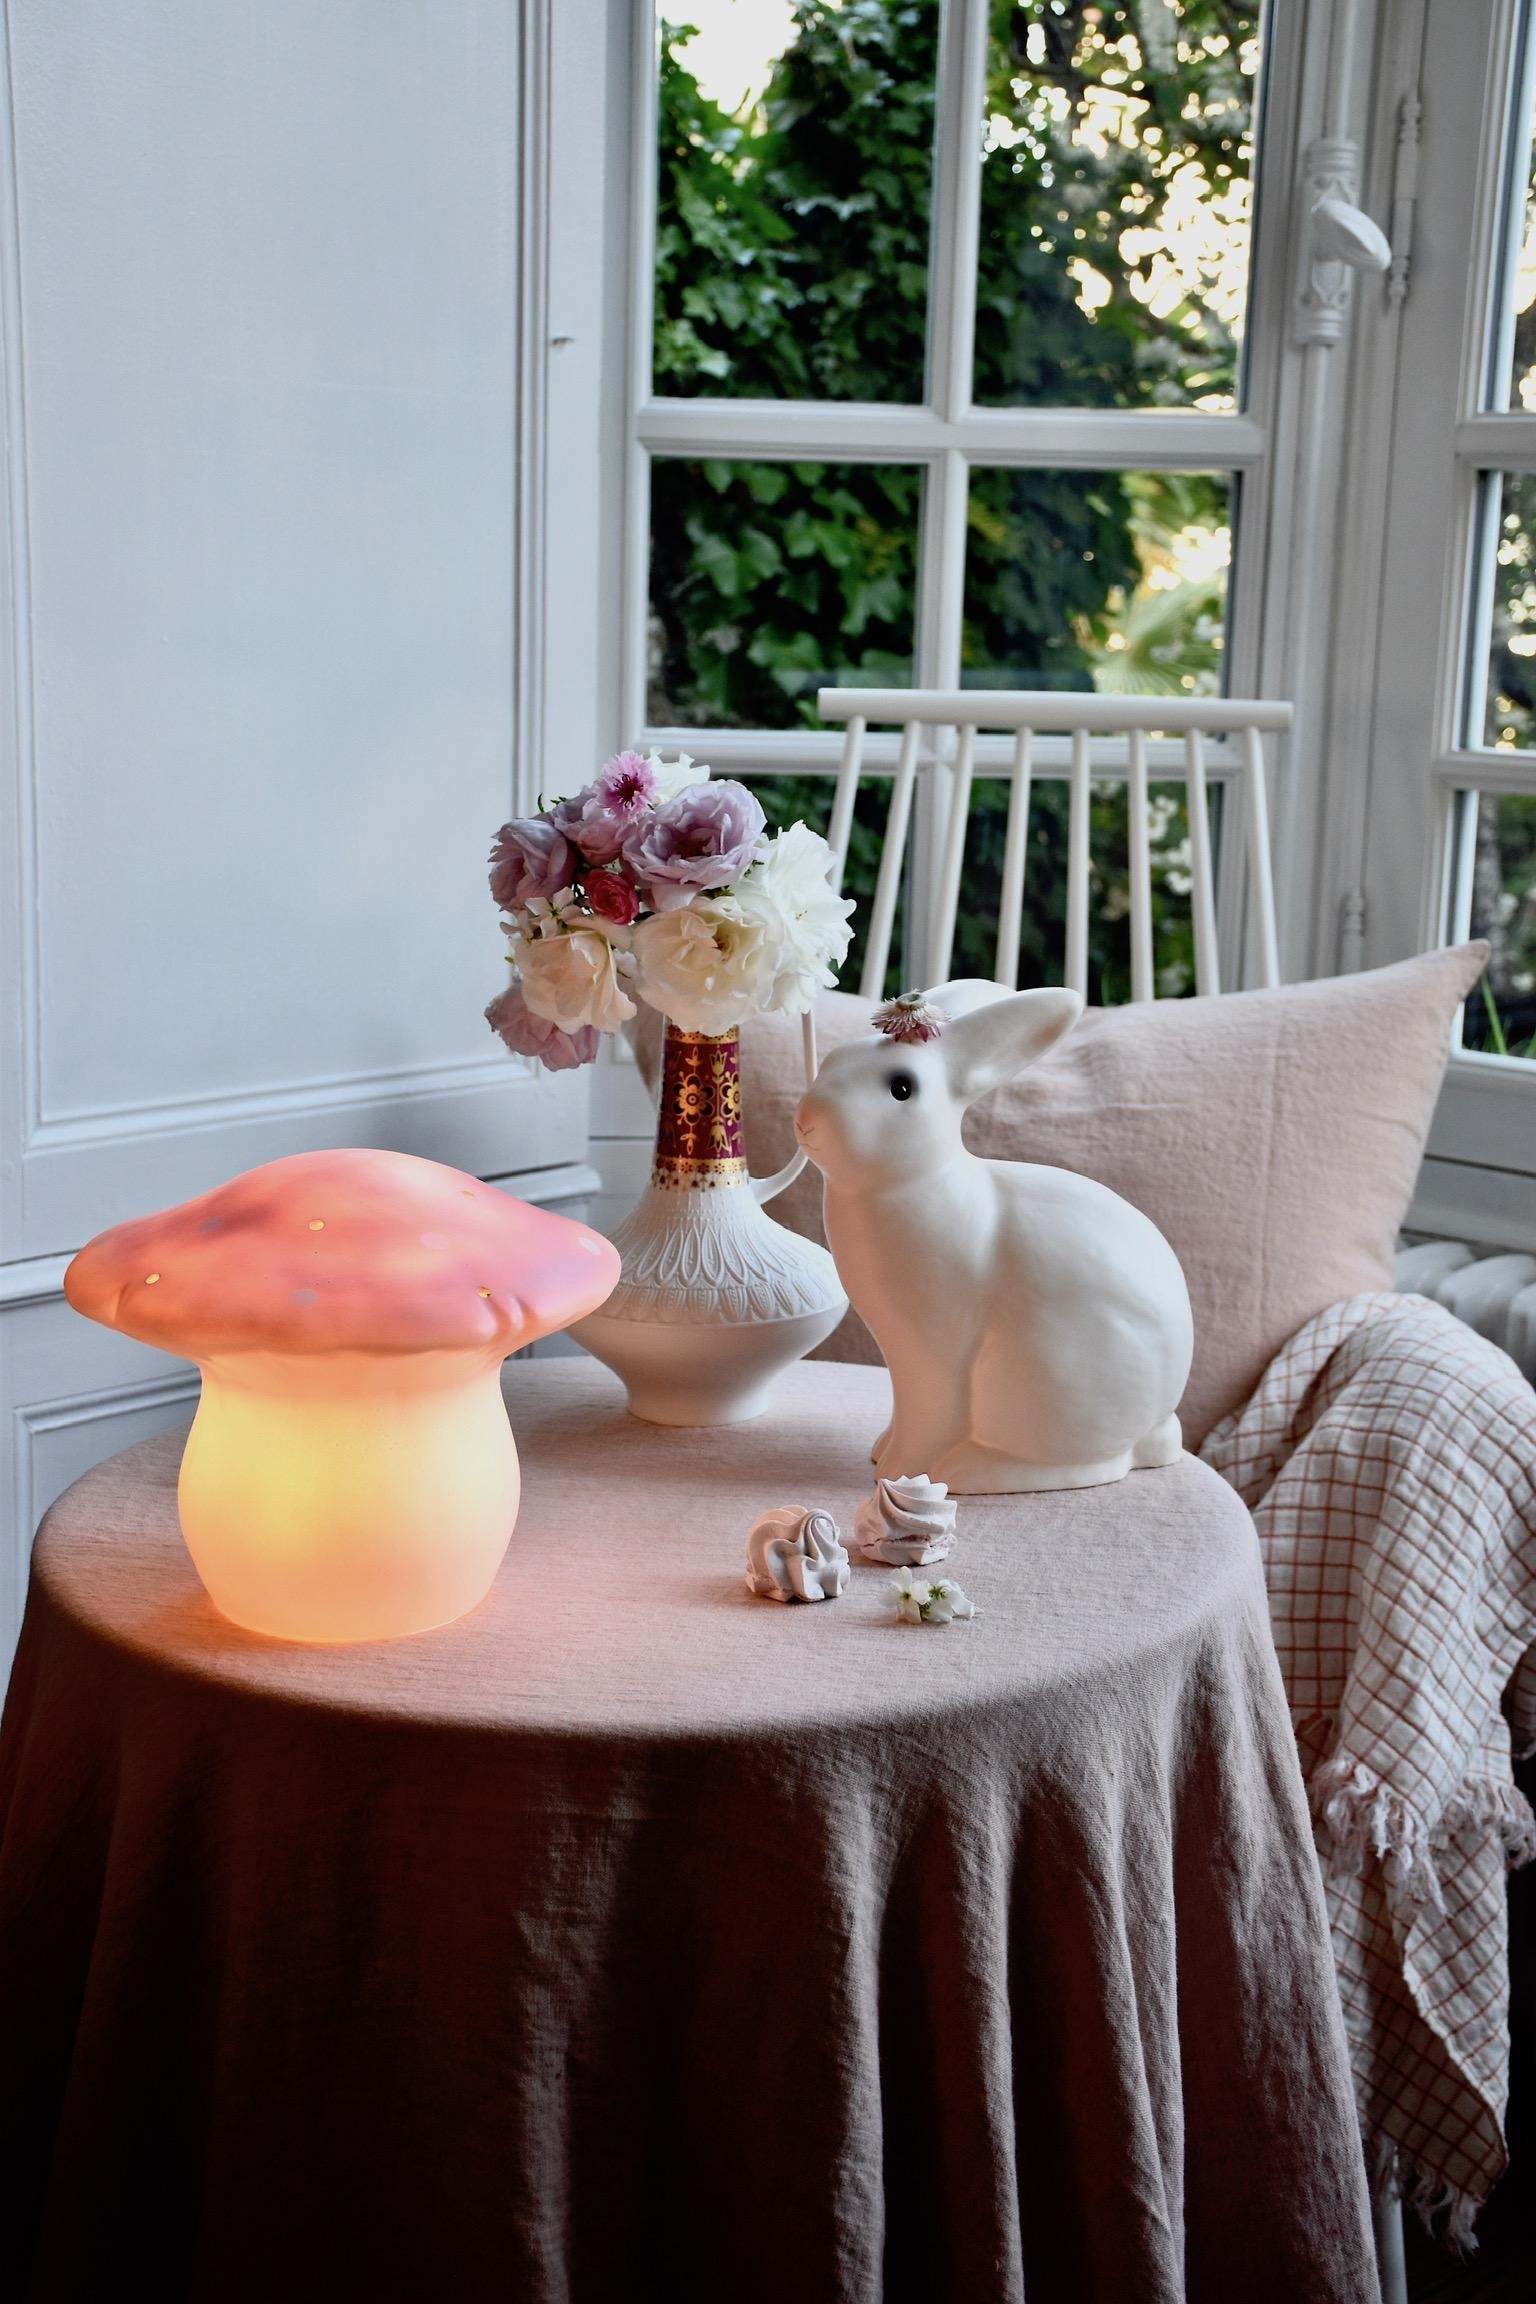 Magisches Licht mit diesen Lampen! #egmonttoys #lampe #verlosung #petitsouriredesign #instagram